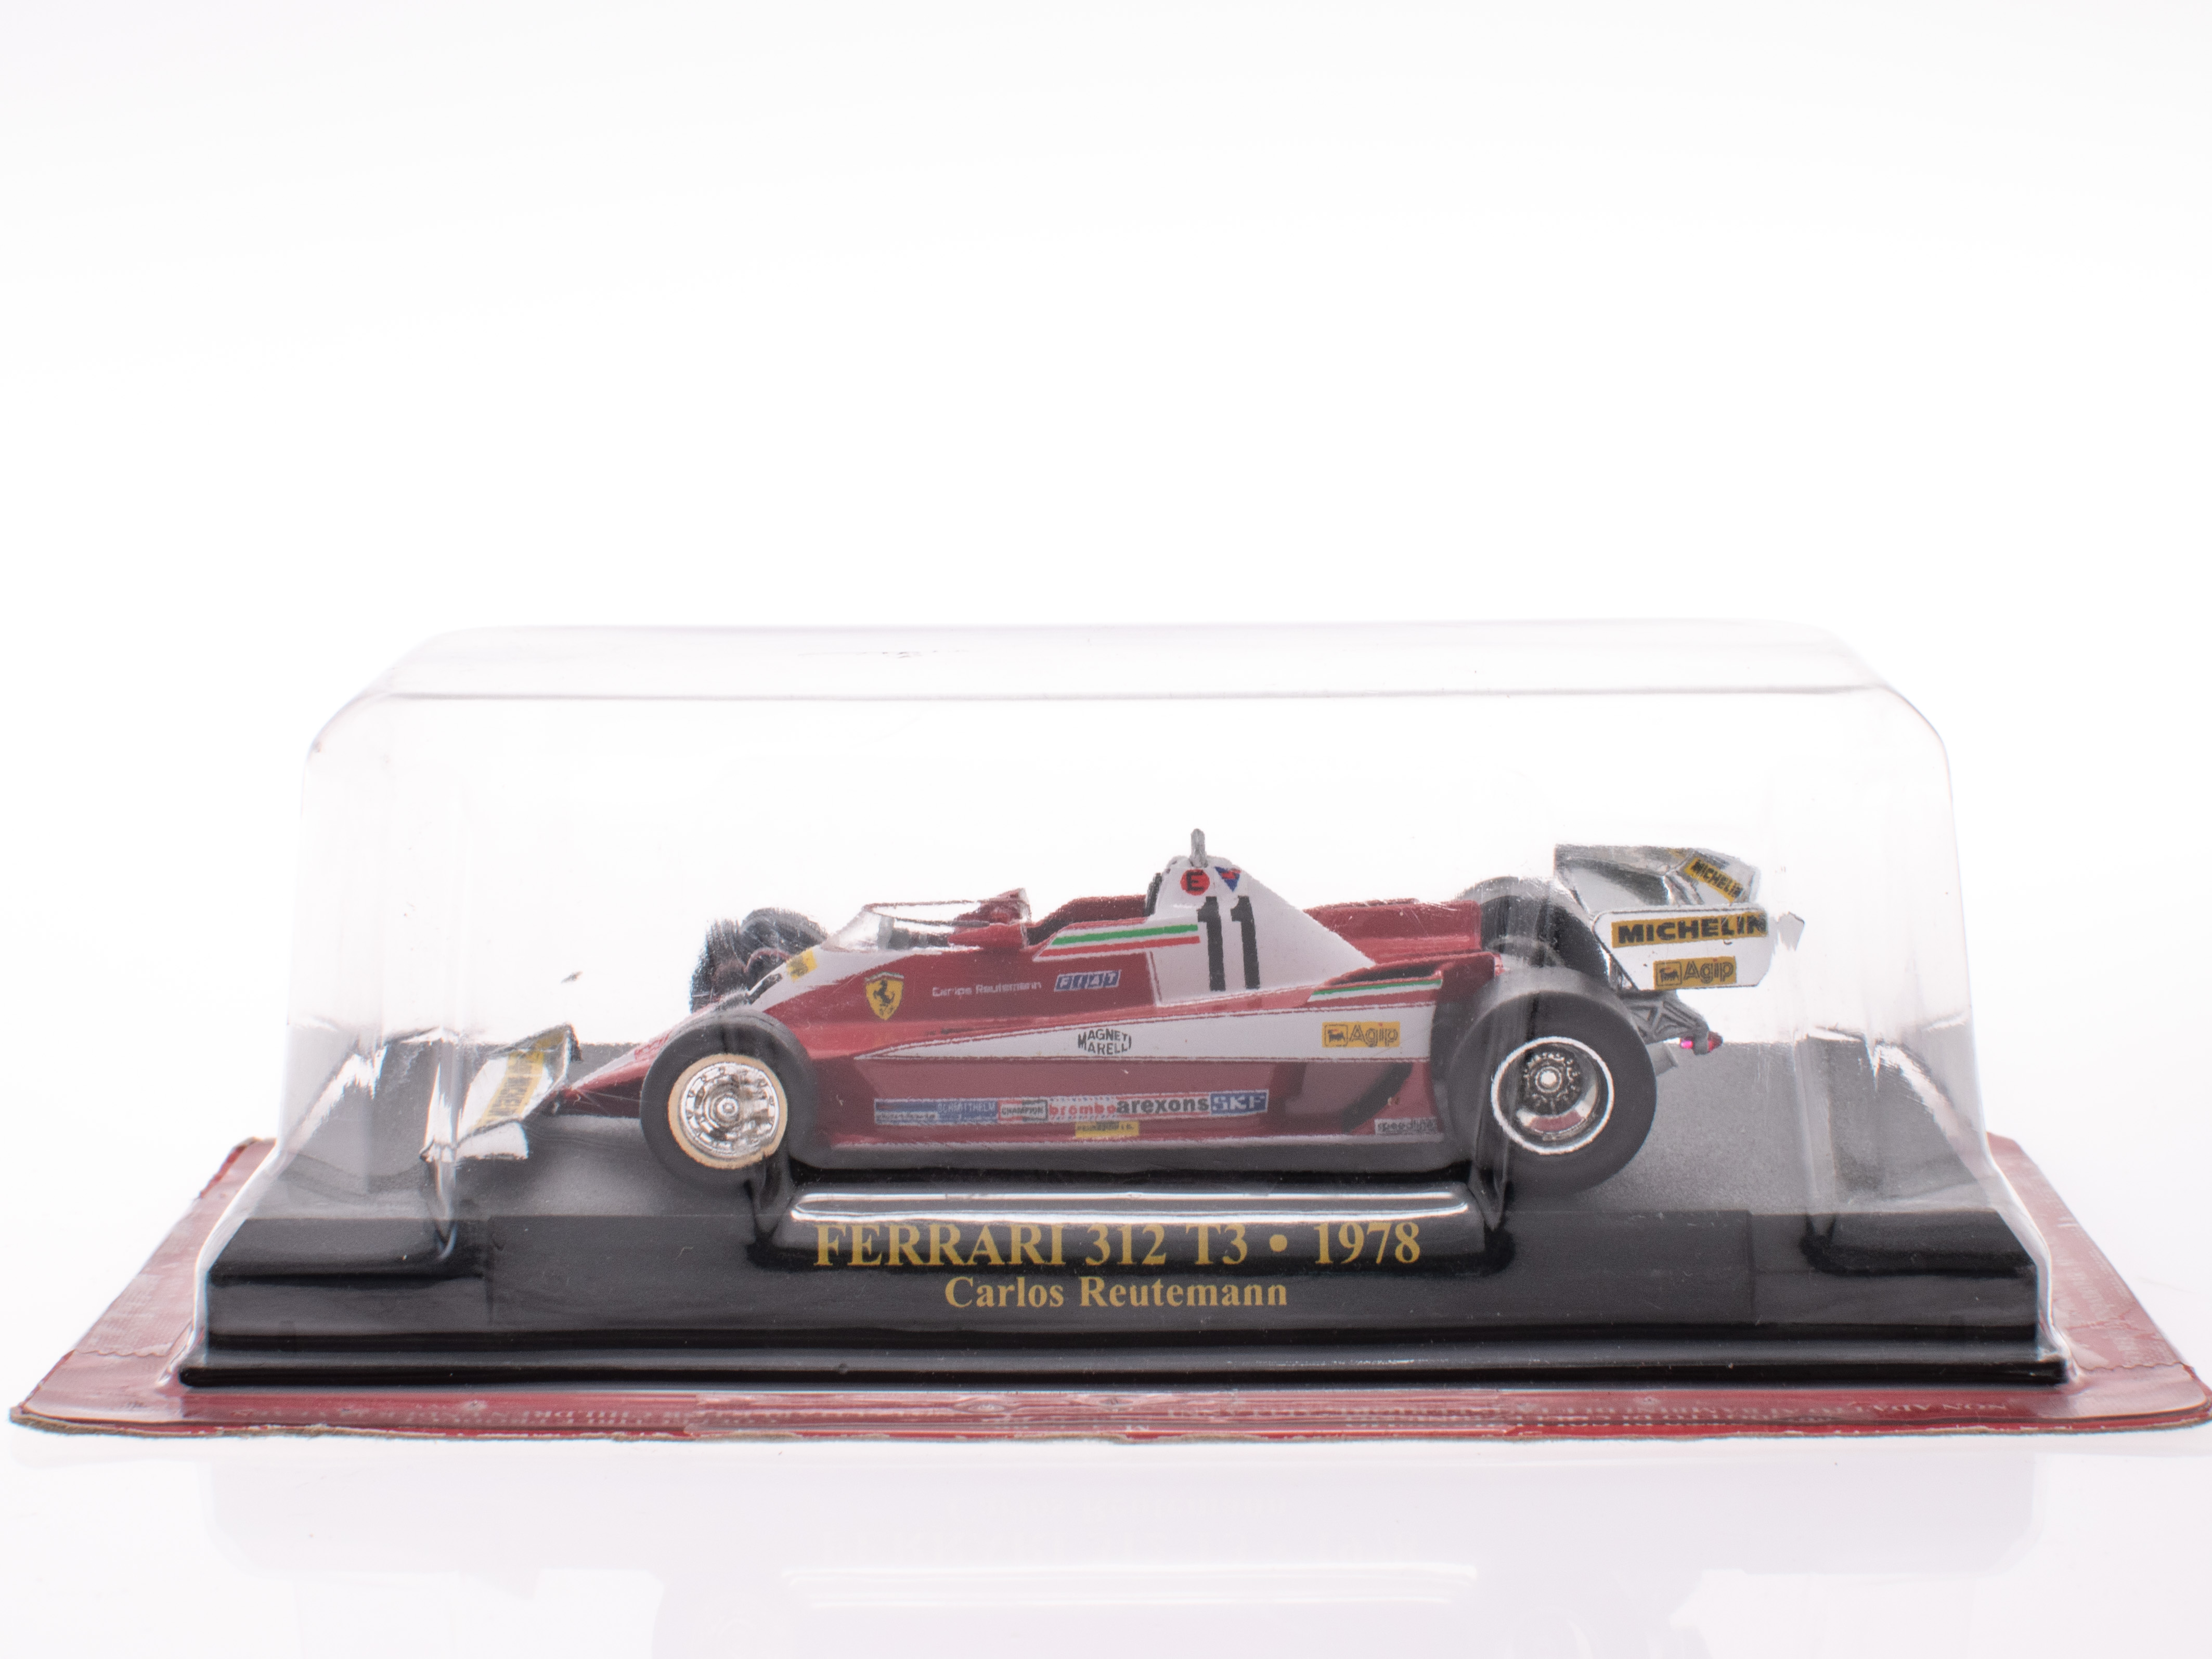 FERRARI 312 T3 - 1978 - Carlos Reutemann